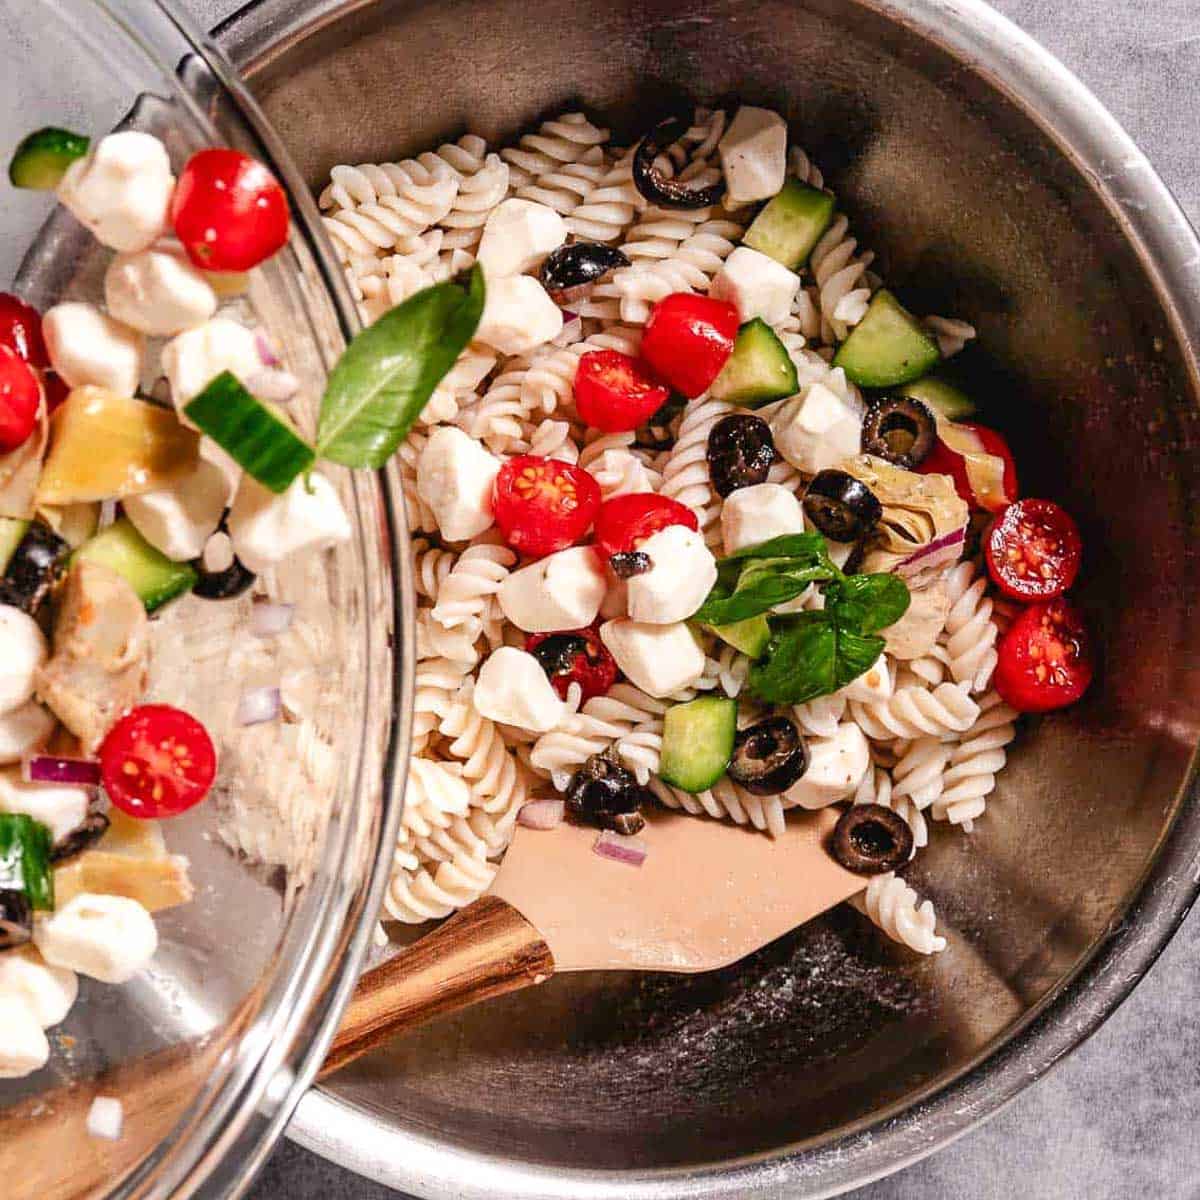 Gluten free pasta with mozzarella, basil, and veggies.